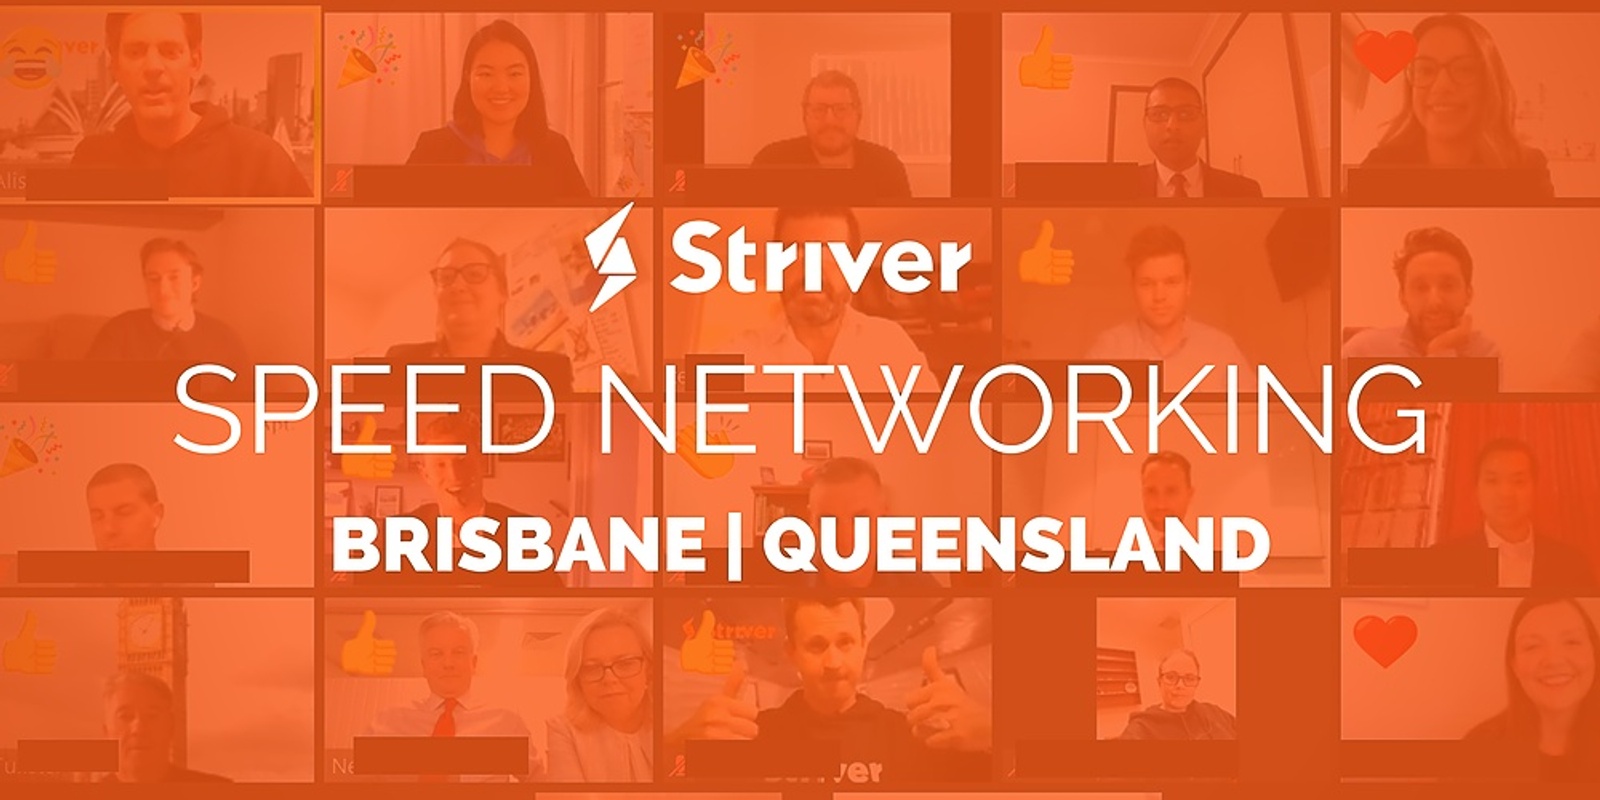 Virtual Speed Networking Brisbane Queensland